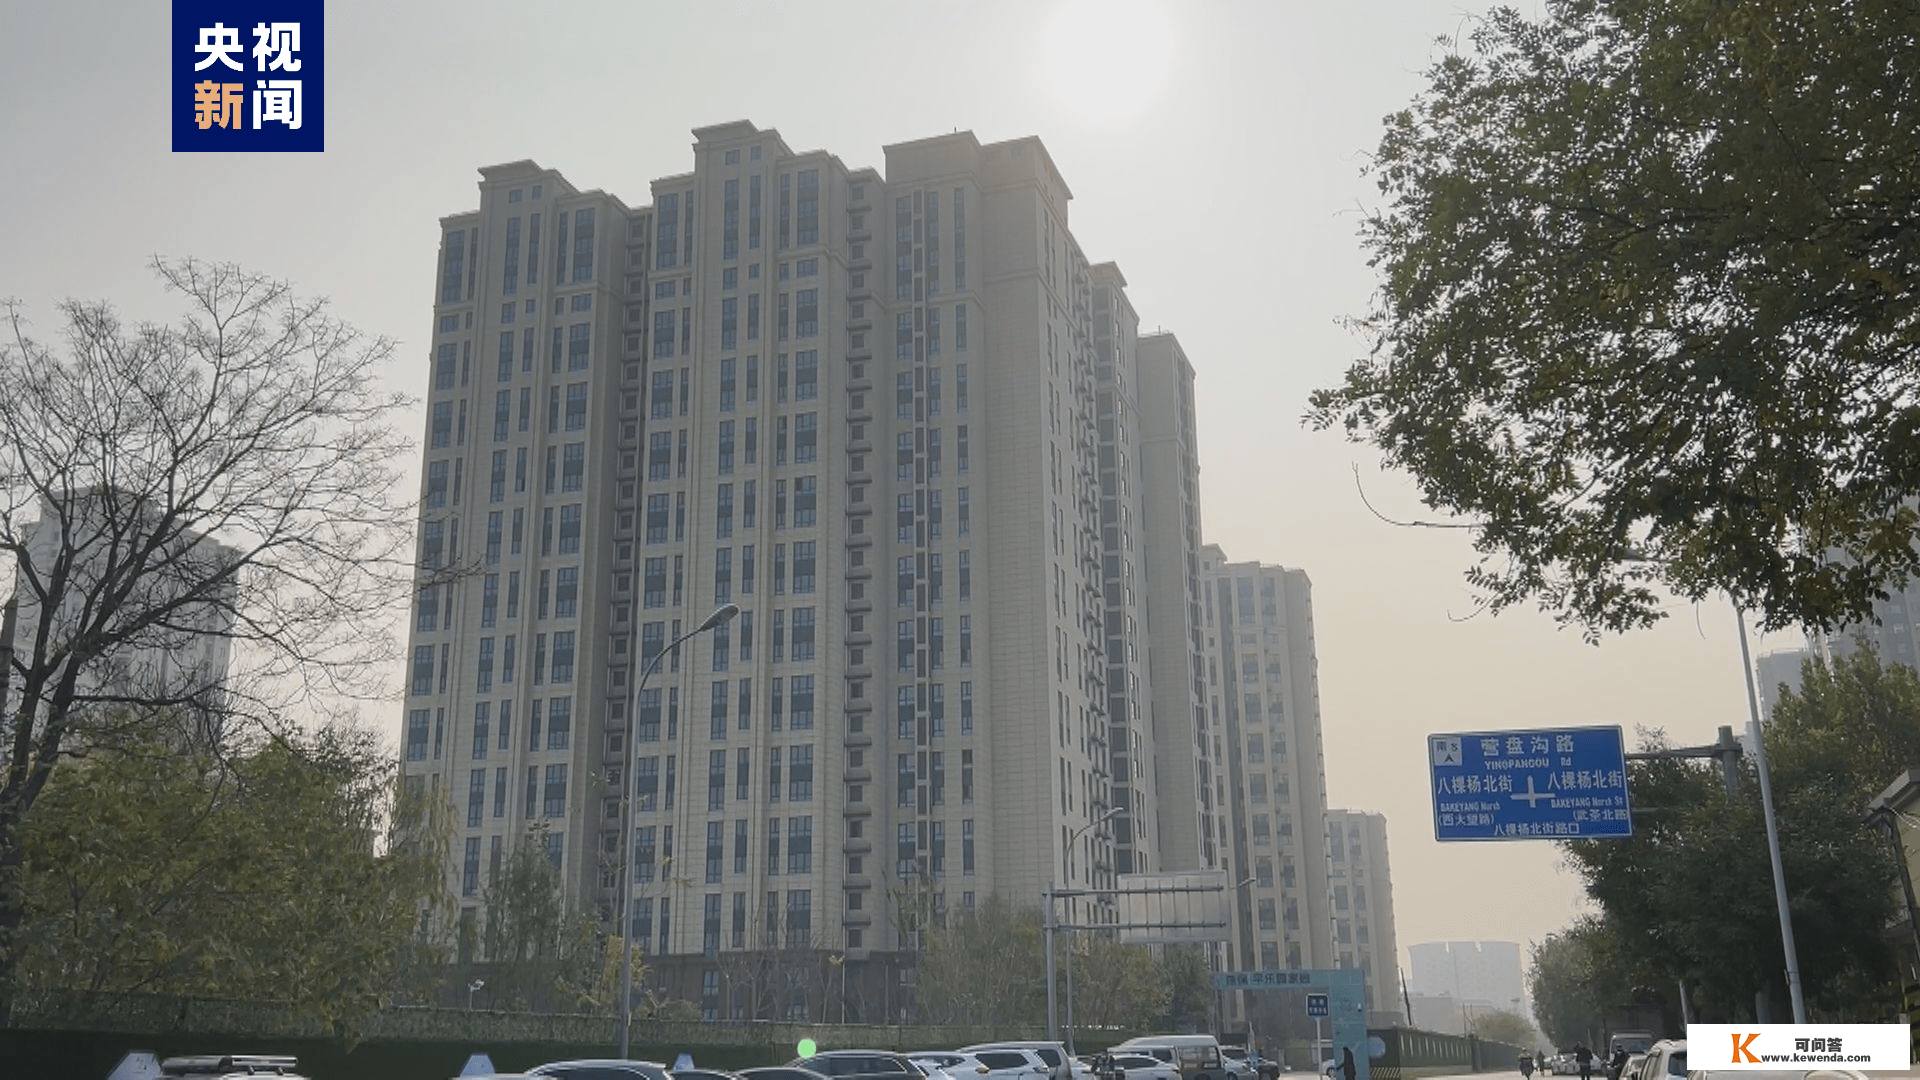 北京首批大学生保租房全面入住 第二批配租范畴再扩大